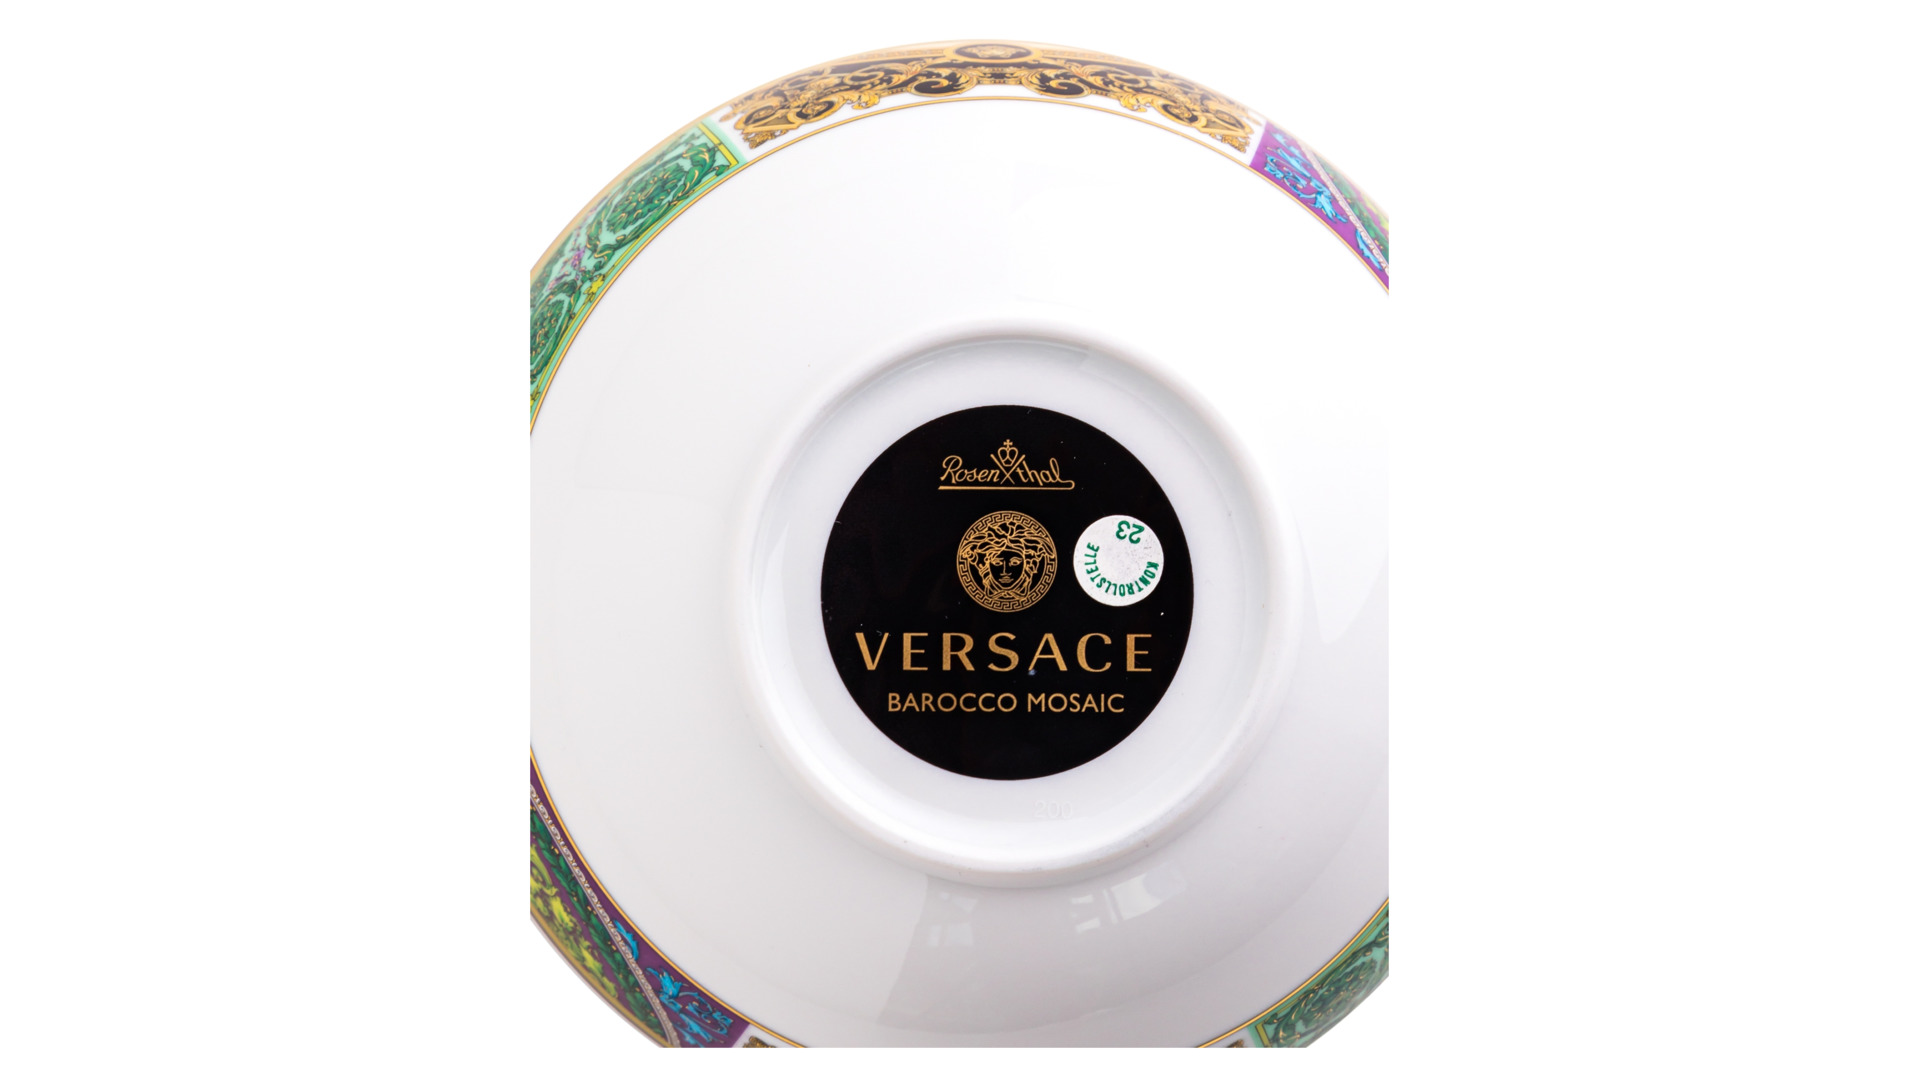 Сервиз столовый Rosenthal Versace Барокко Мозаик №2 на 6  персон 26  предметов, фарфор